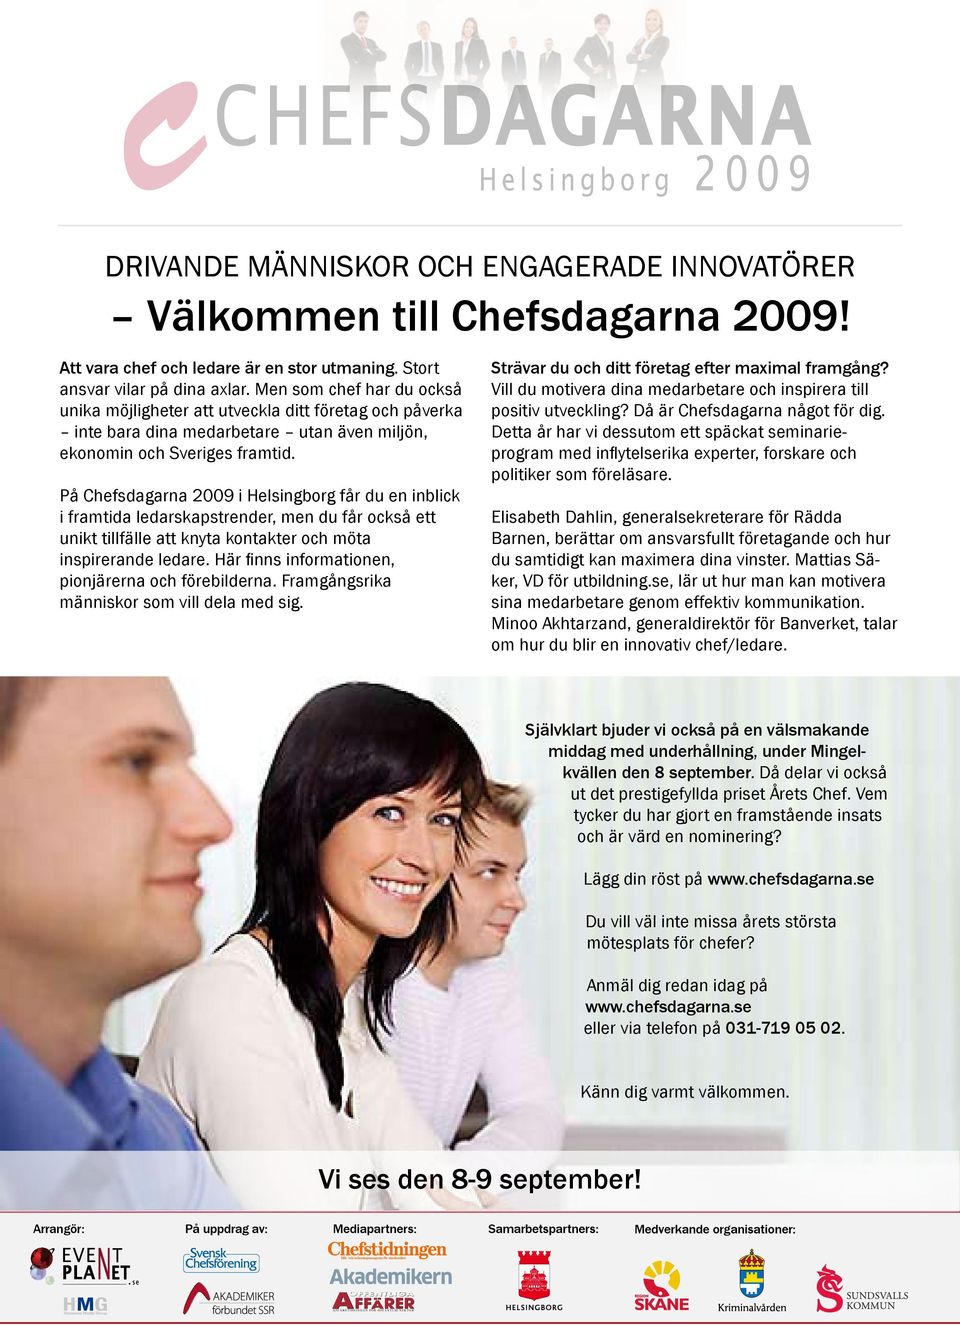 På Chefsdagarna 2009 i Helsingborg får du en inblick i fratida ledarskapstrender, en du får också ett unikt tillfälle att knyta kontakter och öta inspirerande ledare.